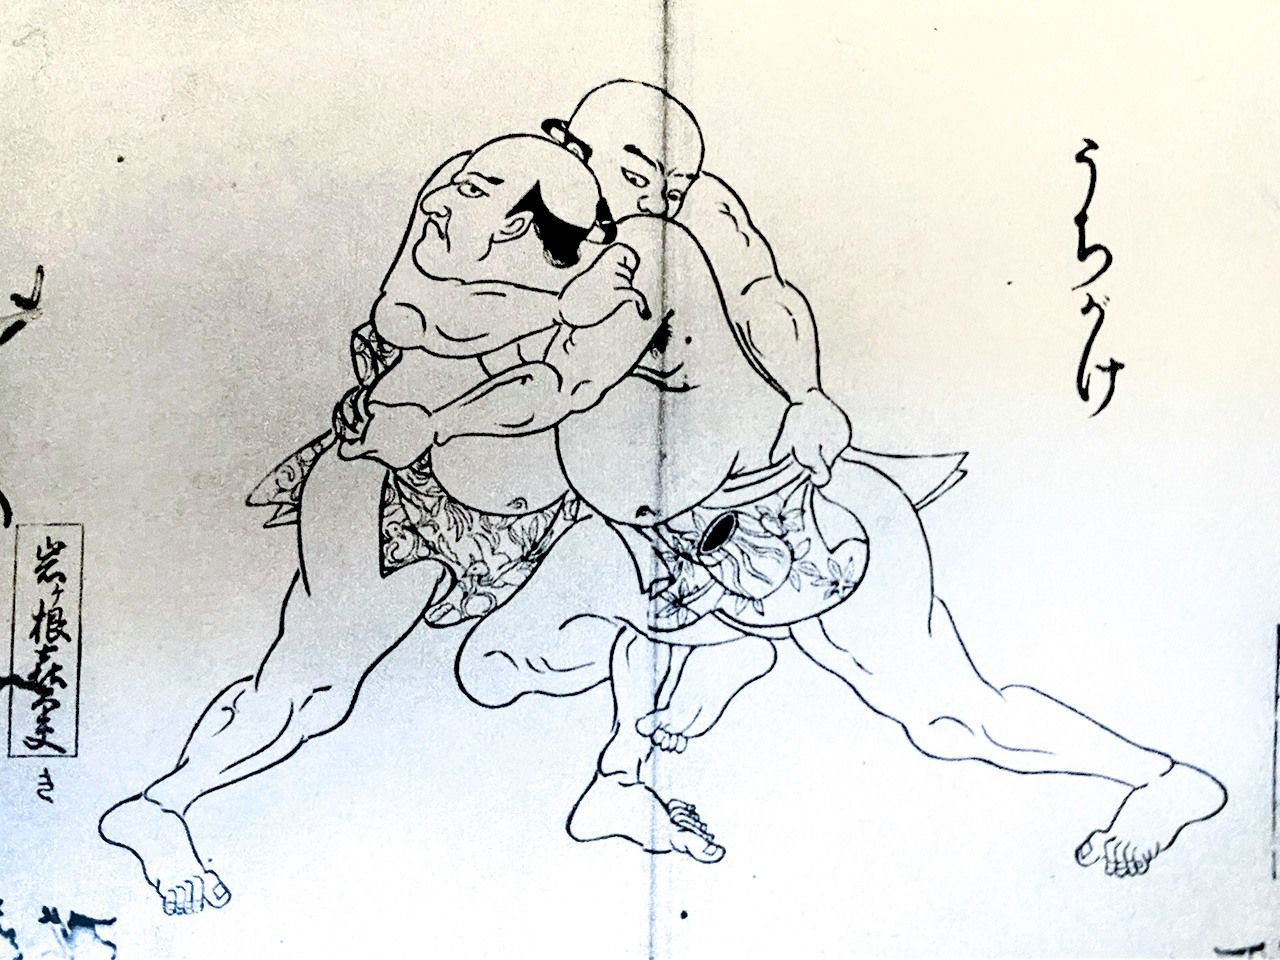 江戸時代の相撲解説書に描かれた「四十八手」の内掛け　「大相撲ジャーナル」提供